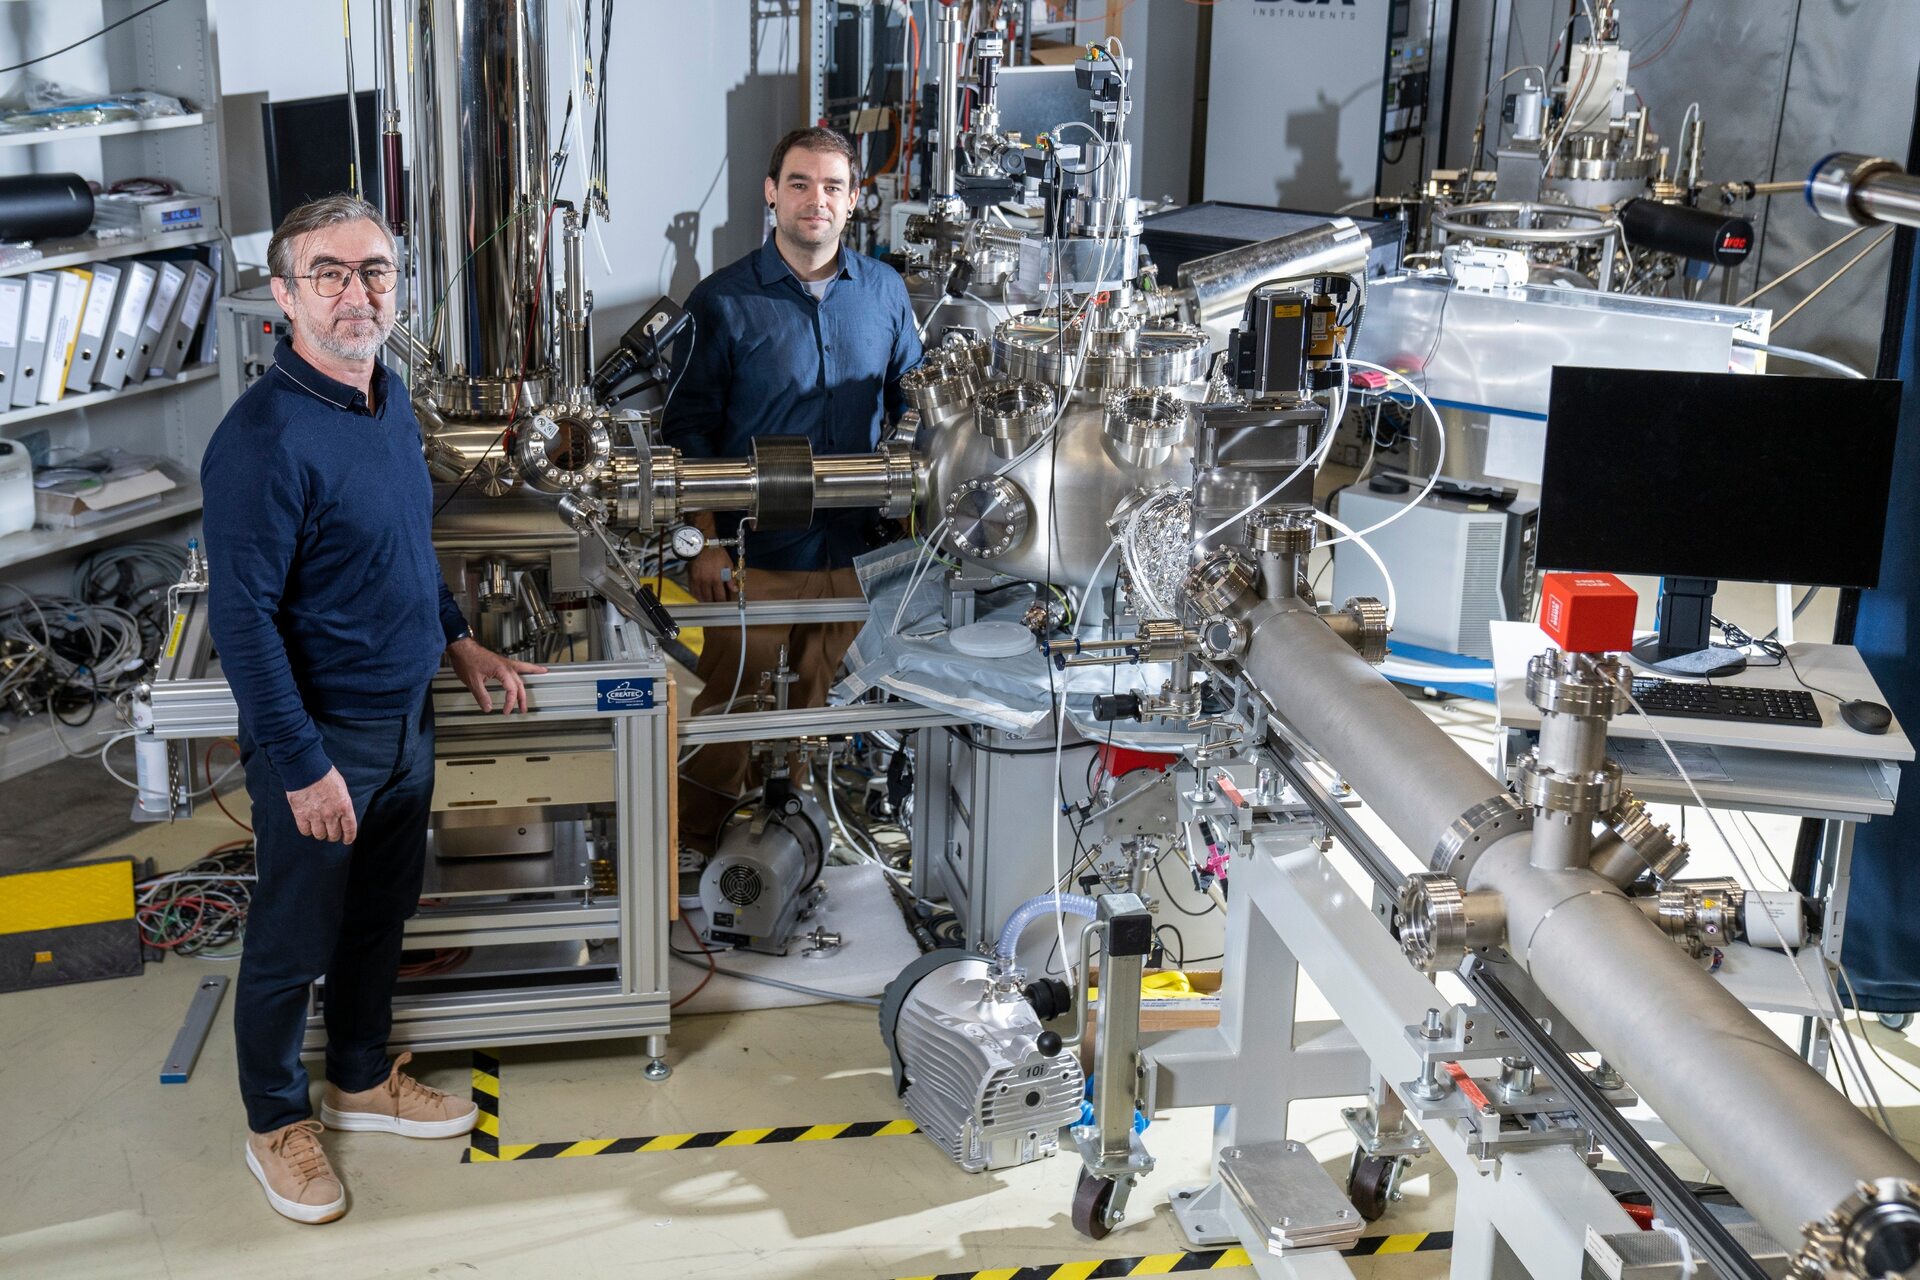 Транзистори кои се префрлаат на светлина: Милан Радовиќ и Едуардо Бонини Гуедес од групата Spectroscopy of Quantum Materials во зраците на Spectroscopy of Interfaces and Surfaces (SIS) на швајцарскиот извор на светлина (SLS) на Институтот Пол Шерер (PSI) (Фото: Махир Џамбег /Институт Пол Шерер)